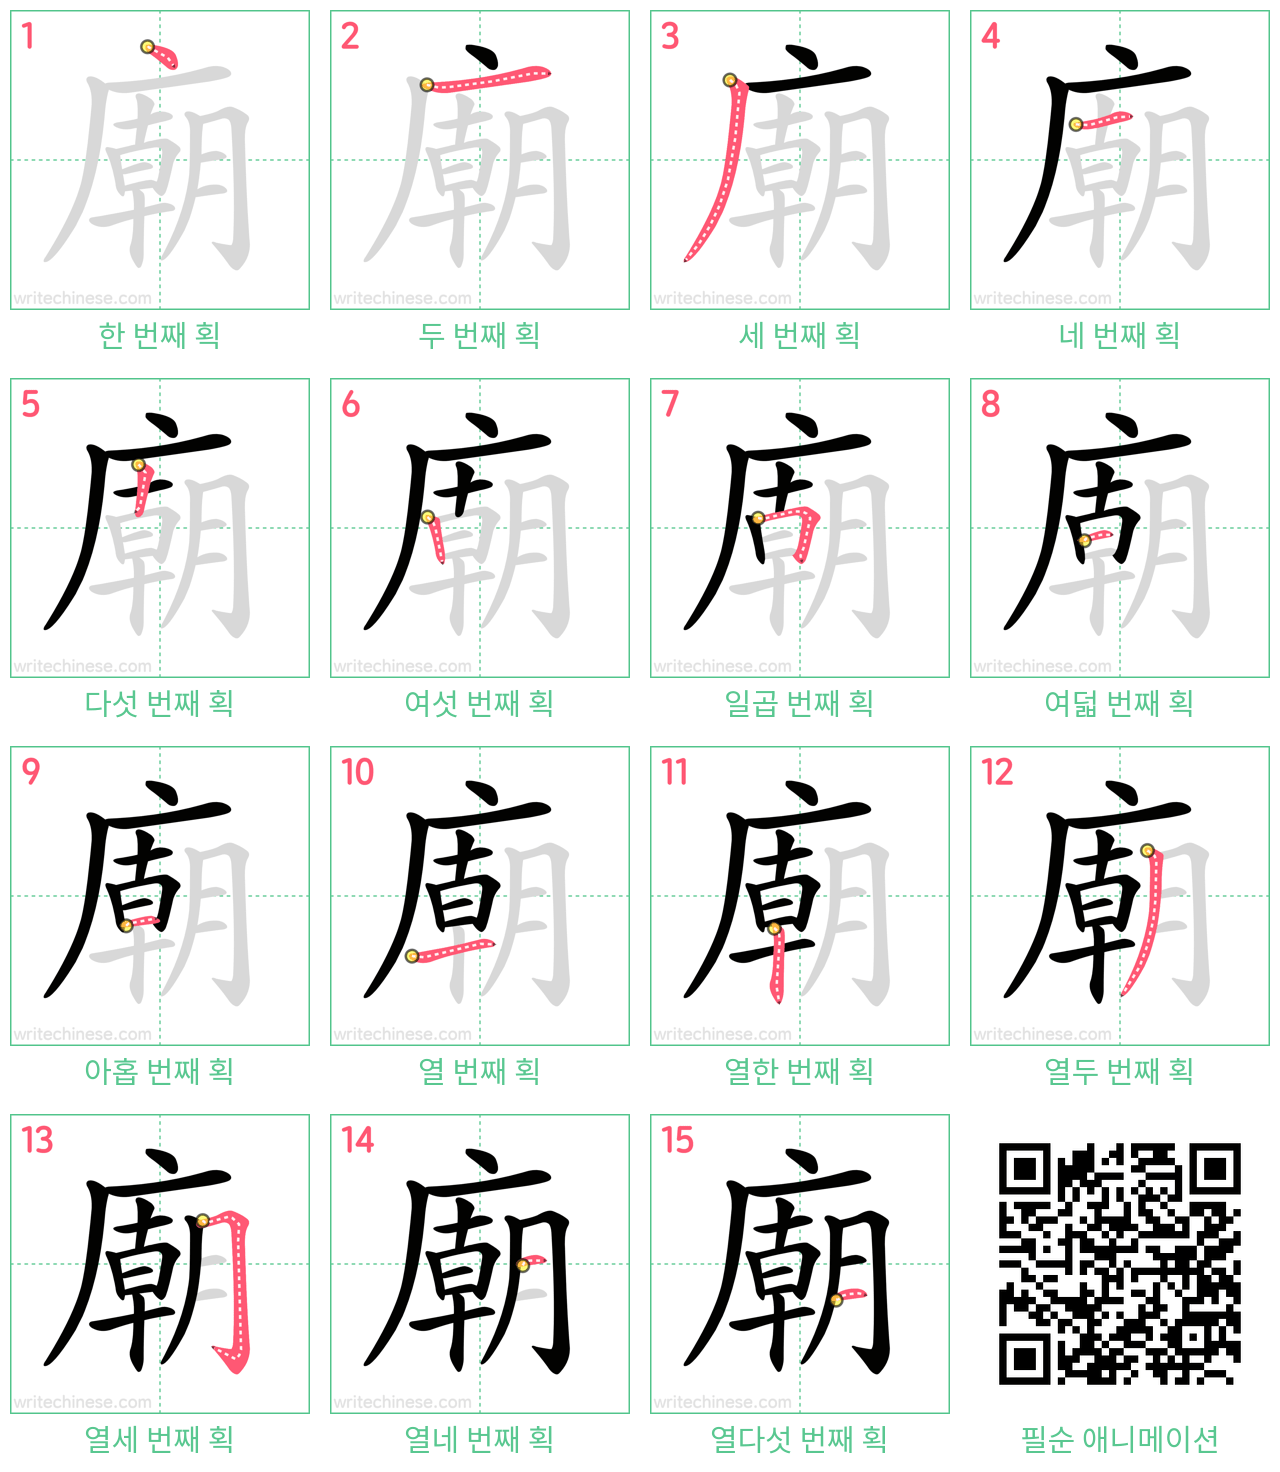 廟 step-by-step stroke order diagrams